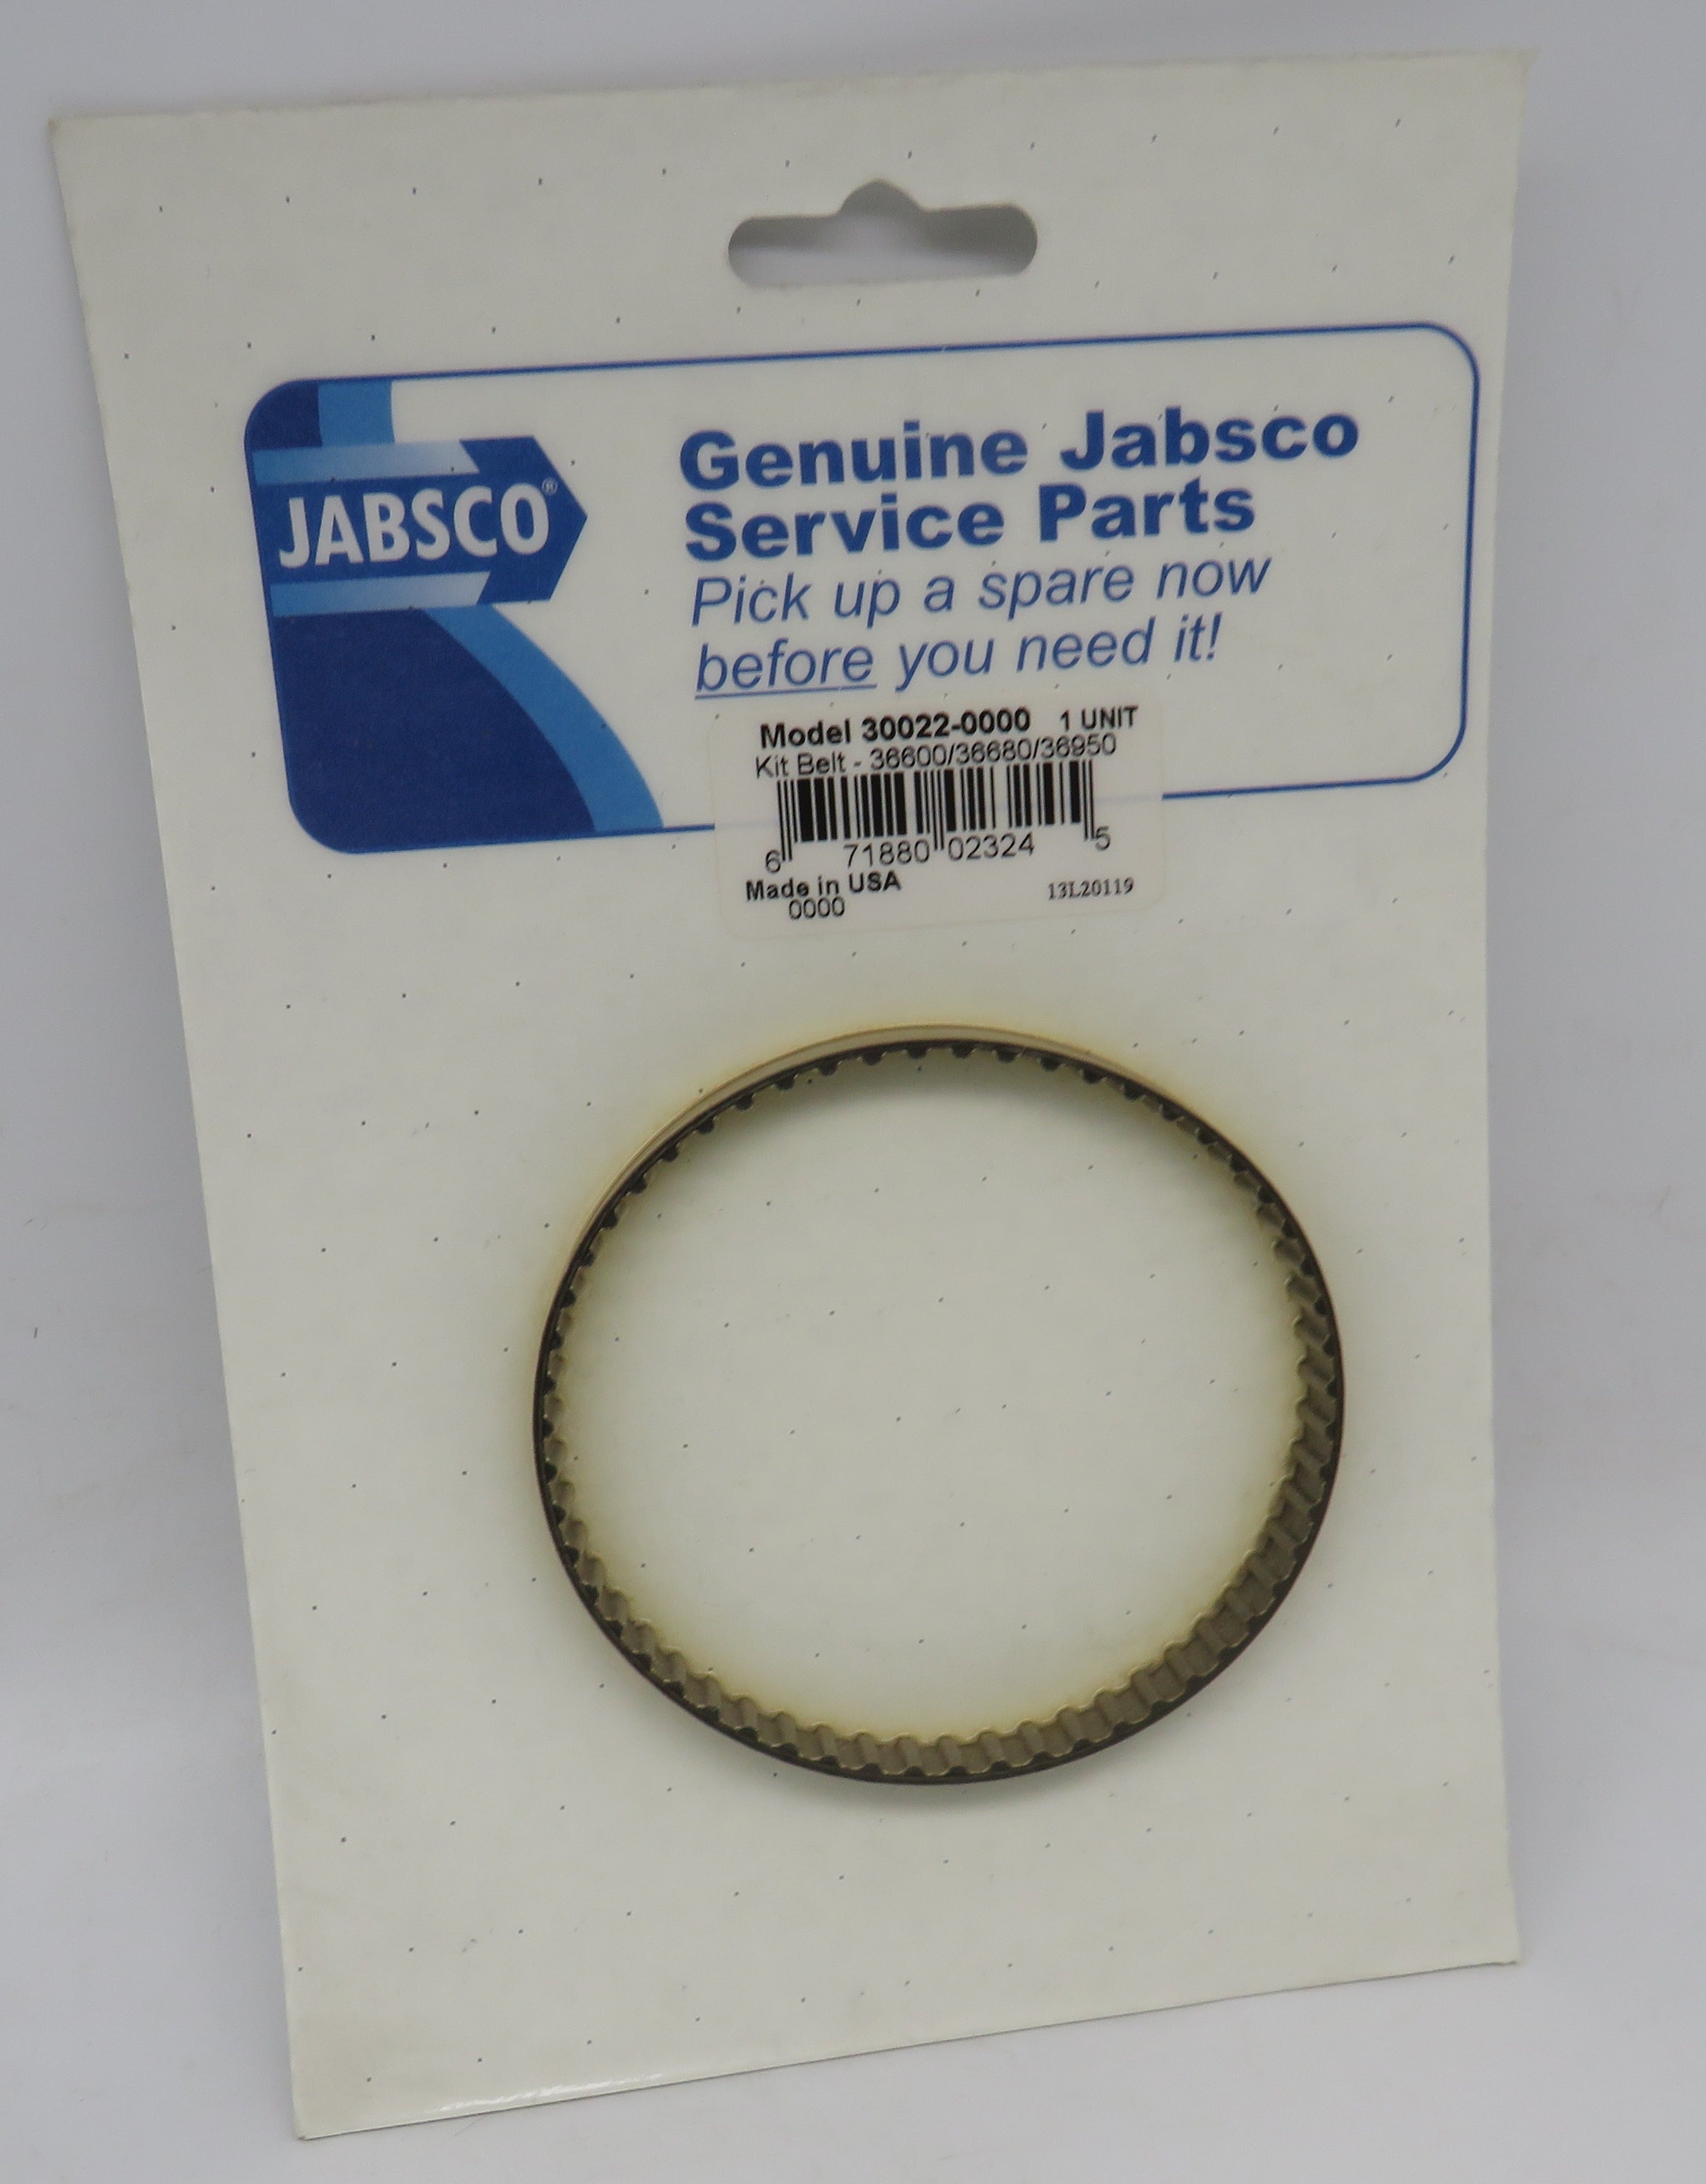 30022-0000 Jabsco Par Belt Kit New replacement is 35223-0000